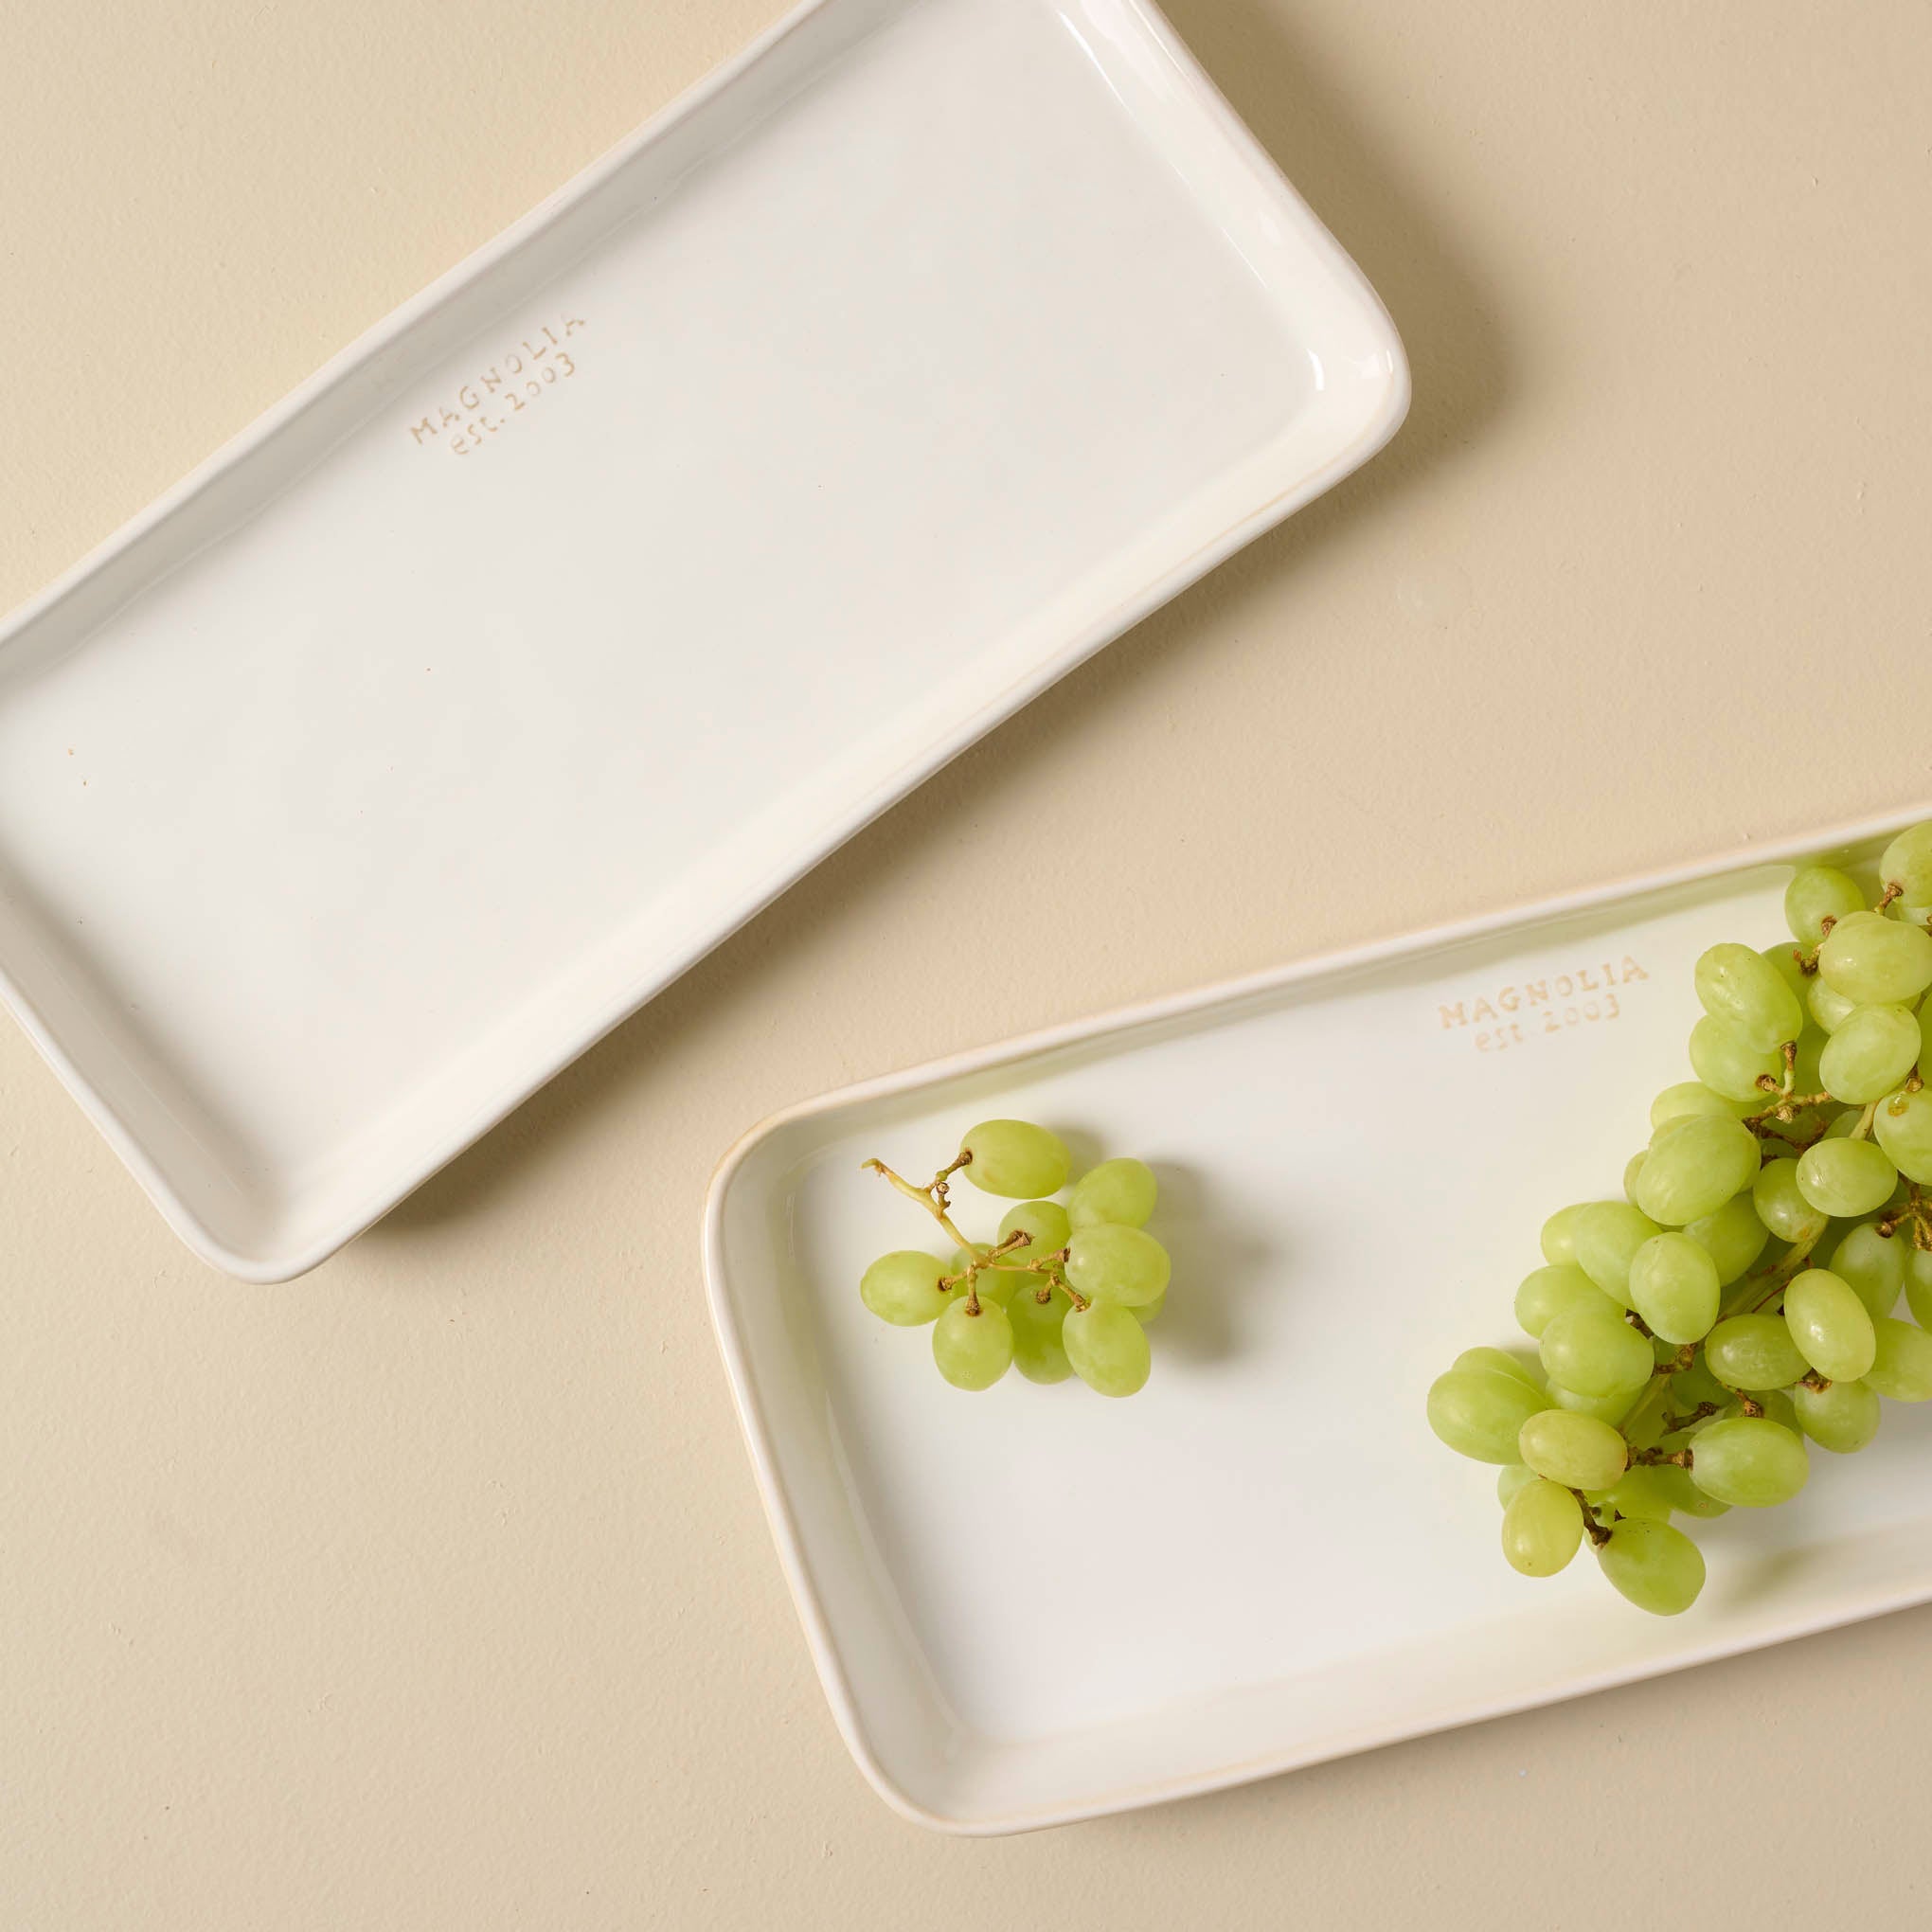 Magnolia Est. Ceramic Rectangular Platter with green grapes